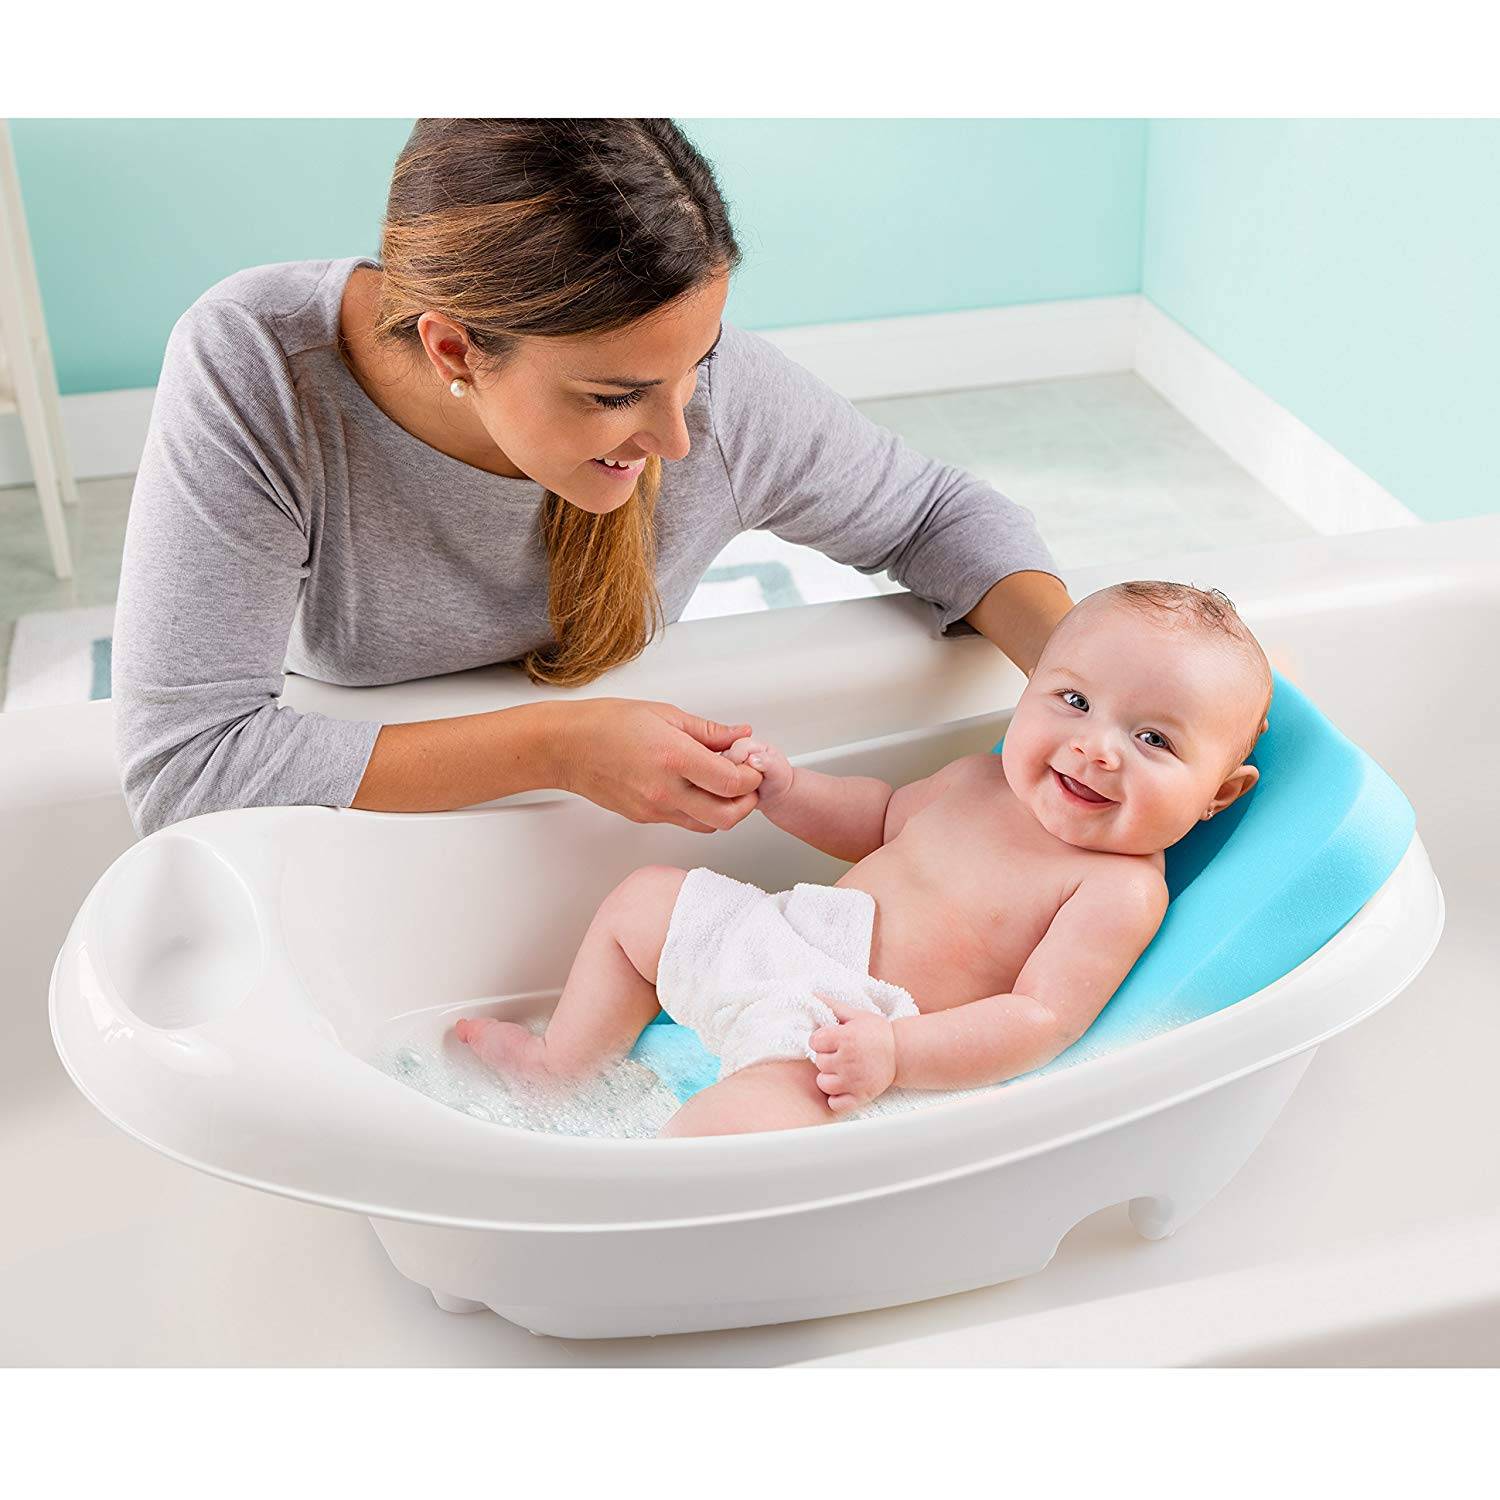 Младенец в ванночке. Детские ванночки для купания новорожденных. Гигиенические ванны для новорожденных. Ребенок купается в ванночке. Какую ванночку надо